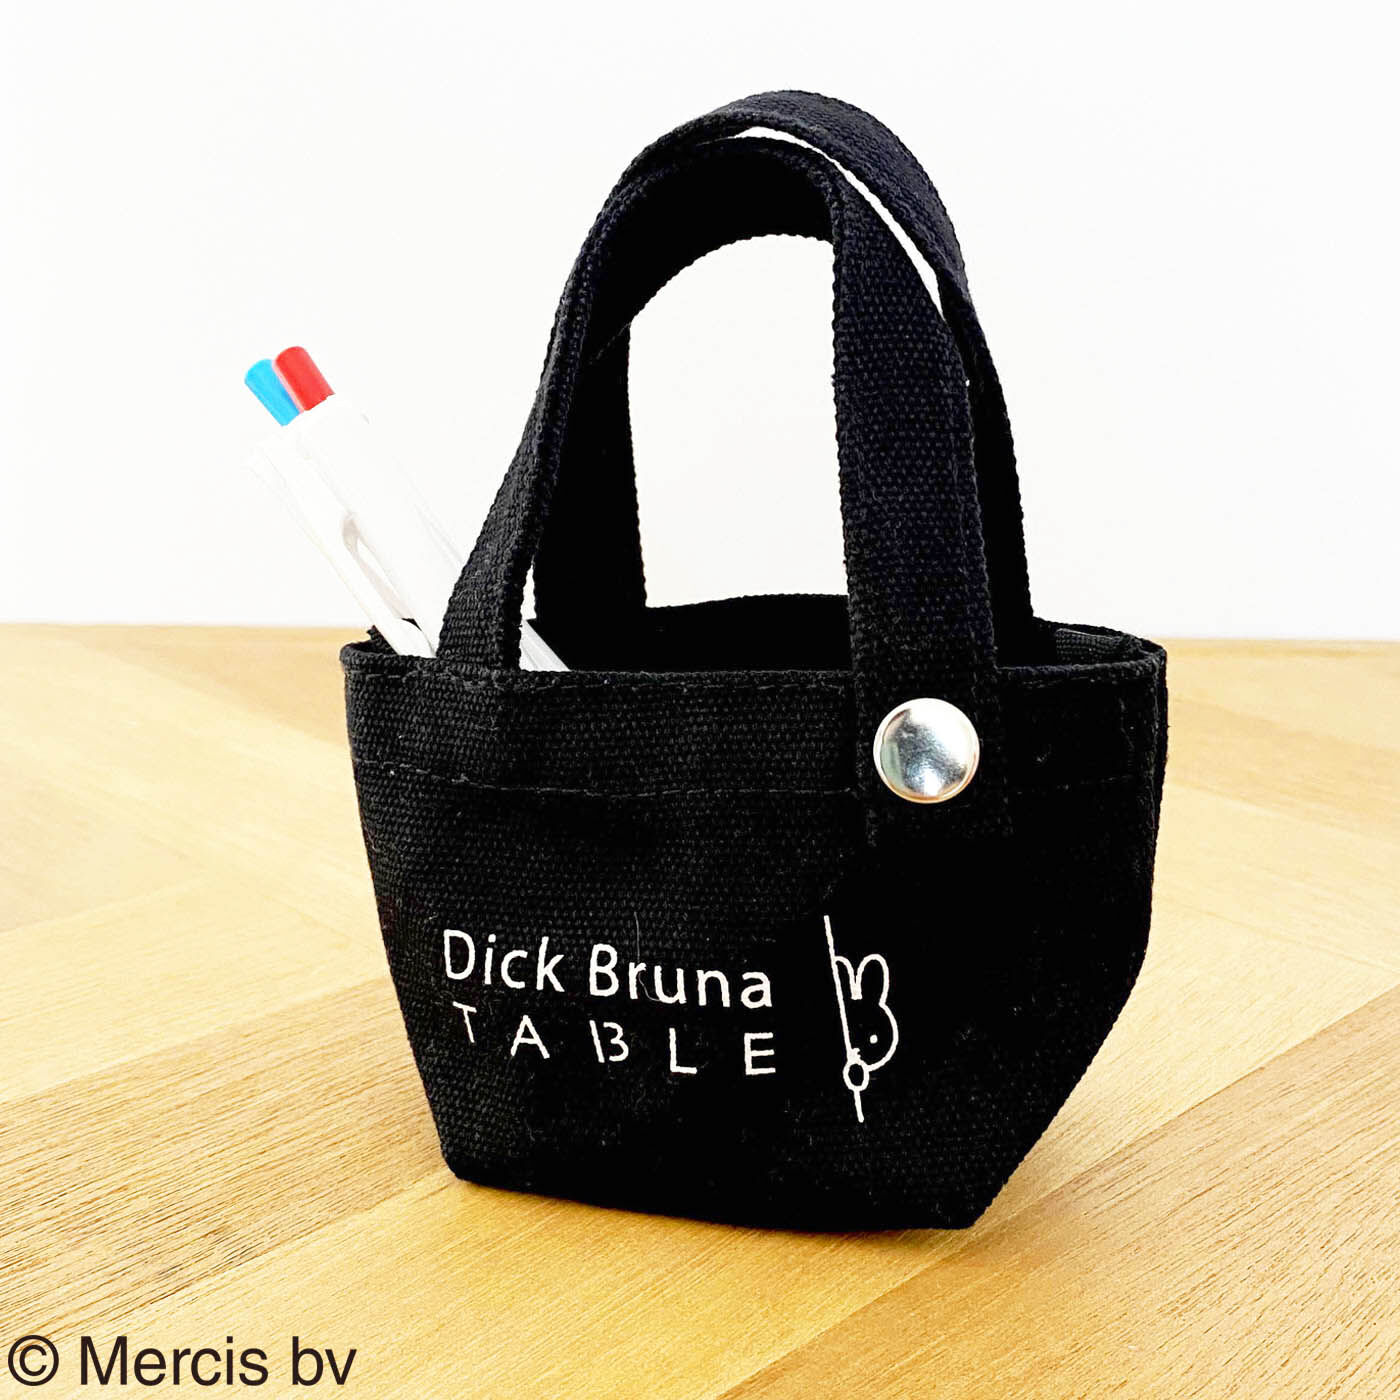 ディック・ブルーナ テーブル|Dick Bruna TABLE  プチトート 黒|人気のDick Bruna TABLEトートバッグをそのまま小さくした本格派